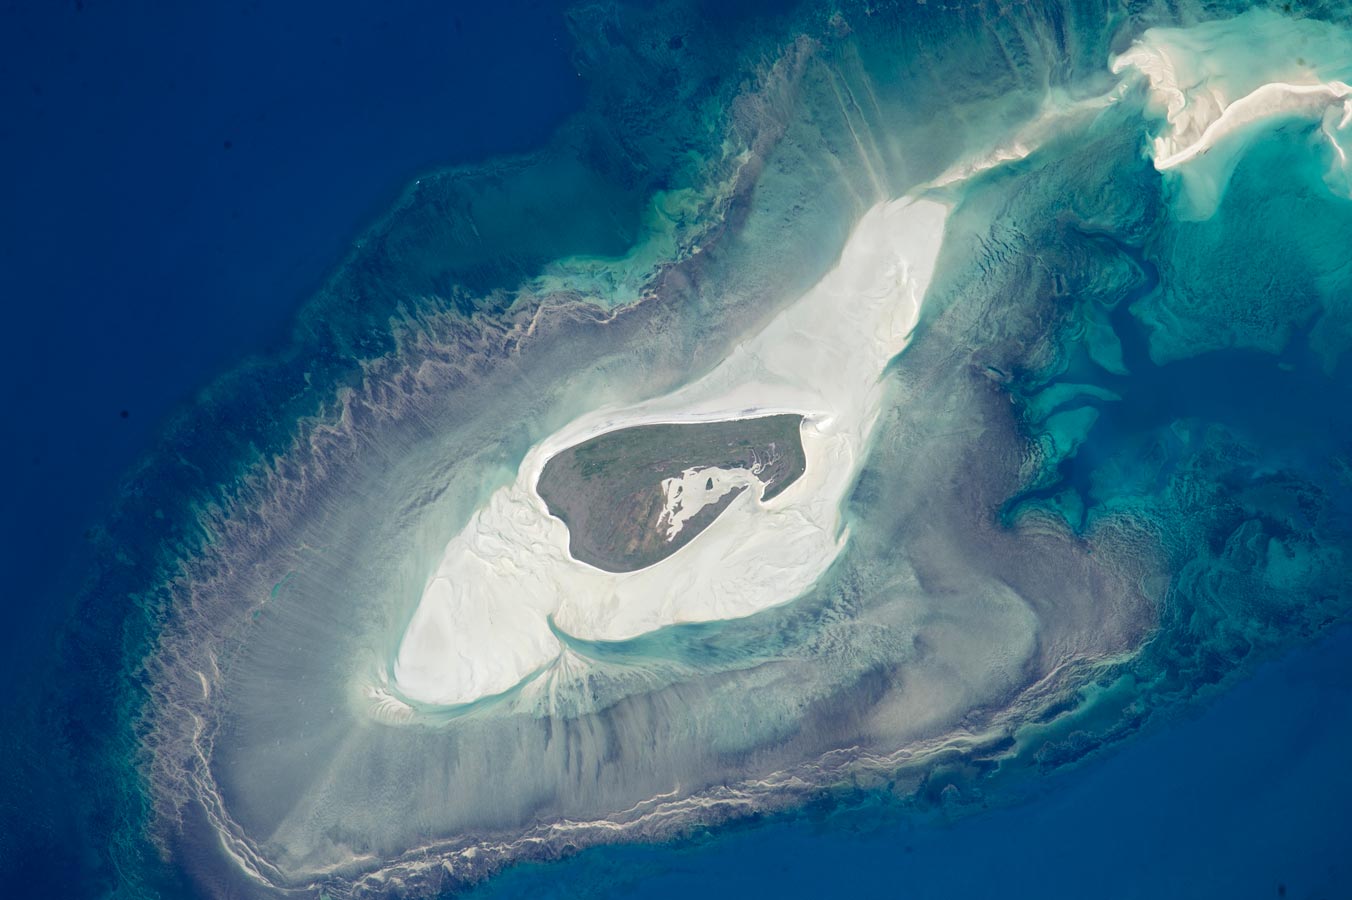 Крошечный остров Адель со многими концентрических зонами вокруг него на северо-западе побережья Австралии. Самая высокая точка находится чуть более 12 футов над уровнем моря, на этом травяном но безлесном острове. Остров имеет важное значение как среда обитания птиц.